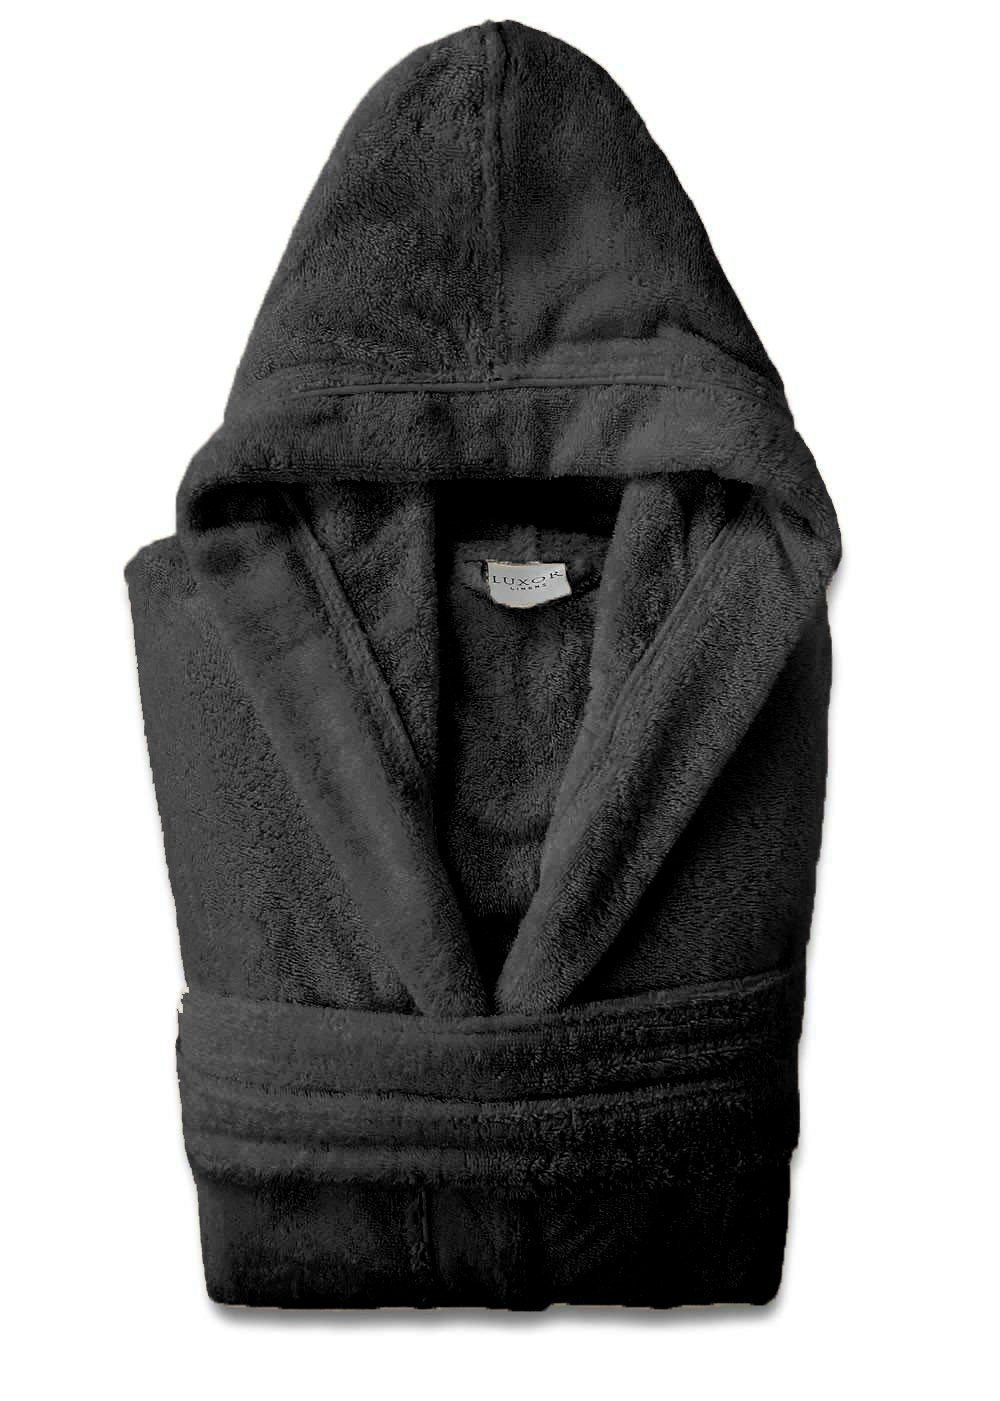 Super Soft Black Plush Hooded Women's Robe